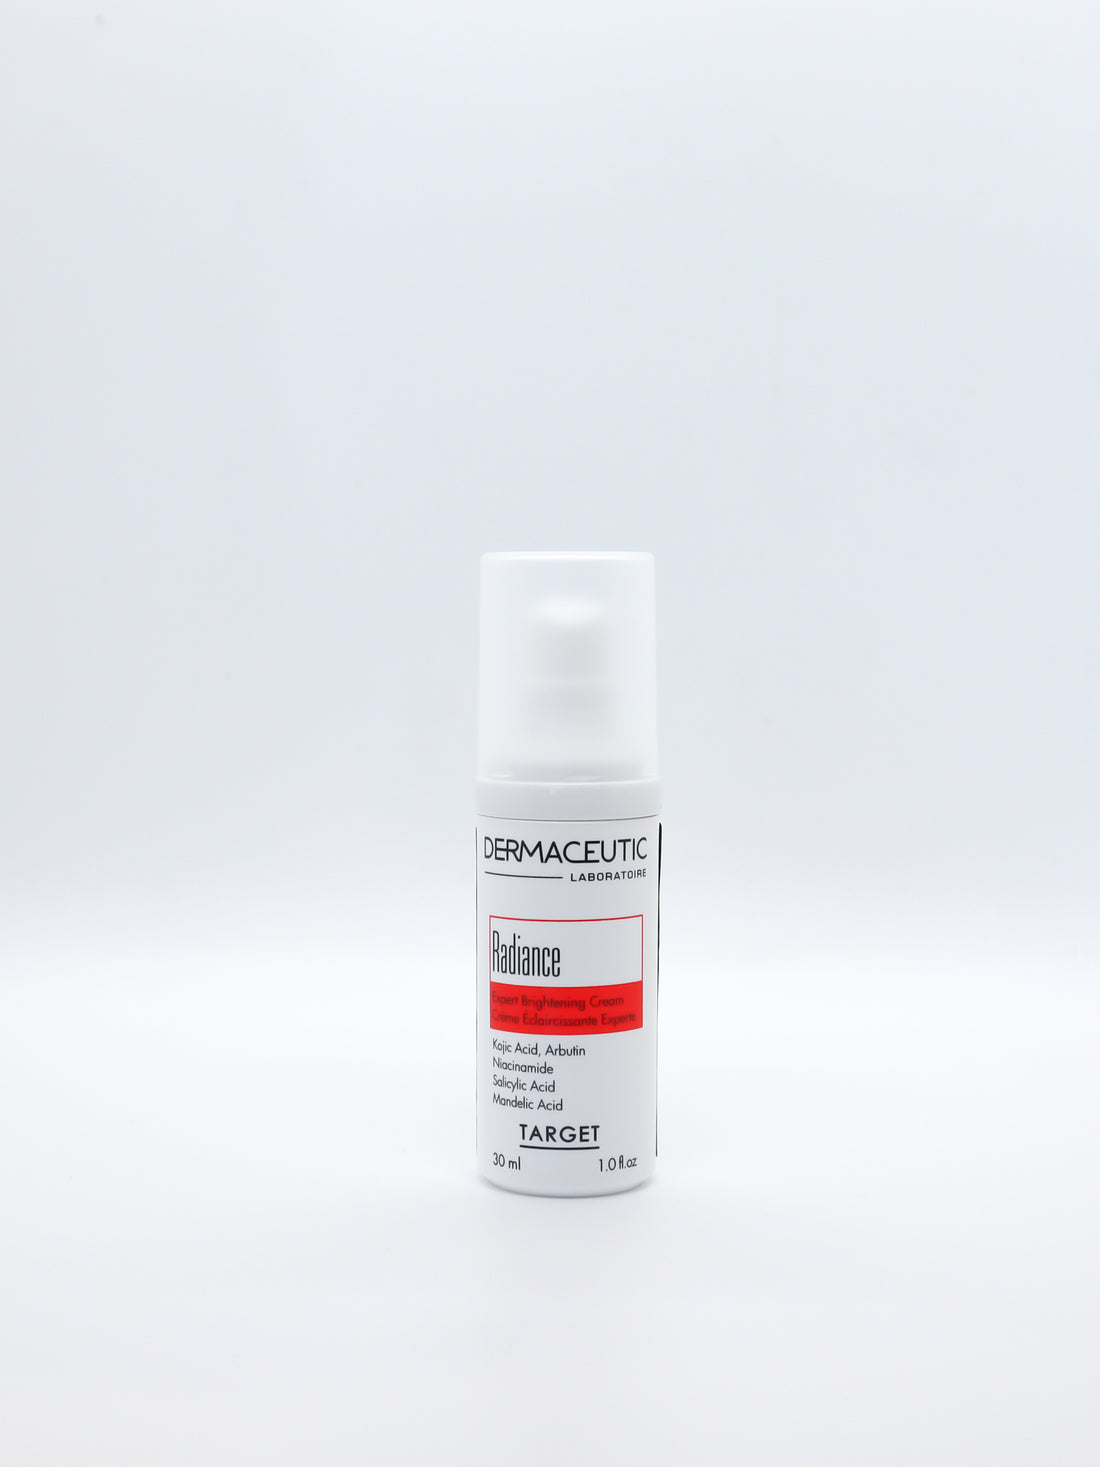 Dermaceutic Laboratoire Radiance Expert Brightening Cream